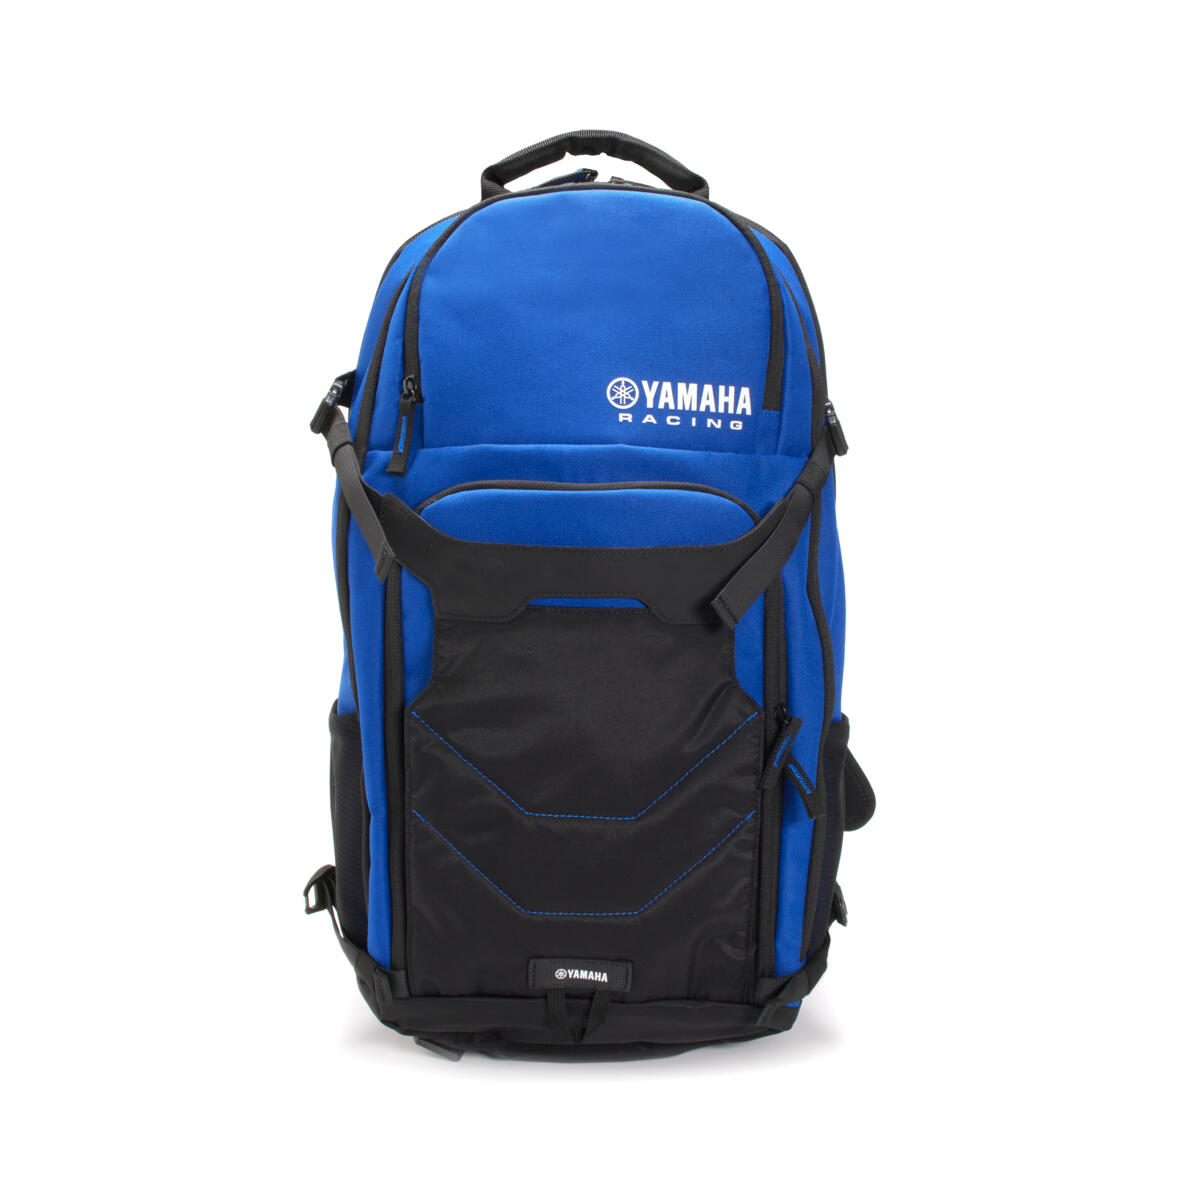 Mit seinem geräumigen Volumen von 20 Litern ist der Yamaha Adventure Backpack ein unverzichtbares Zubehör für längere Bergtouren oder Trails. Sein ergonomisches Design umfasst einen gepolsterten Hüftgurt sowie einstellbare Brust- und Taillenriemen für eine perfekte Passform und hohen Tragekomfort. Der integrierte, CE-geprüfte Rückenprotektor bietet zusätzliche Sicherheit. 